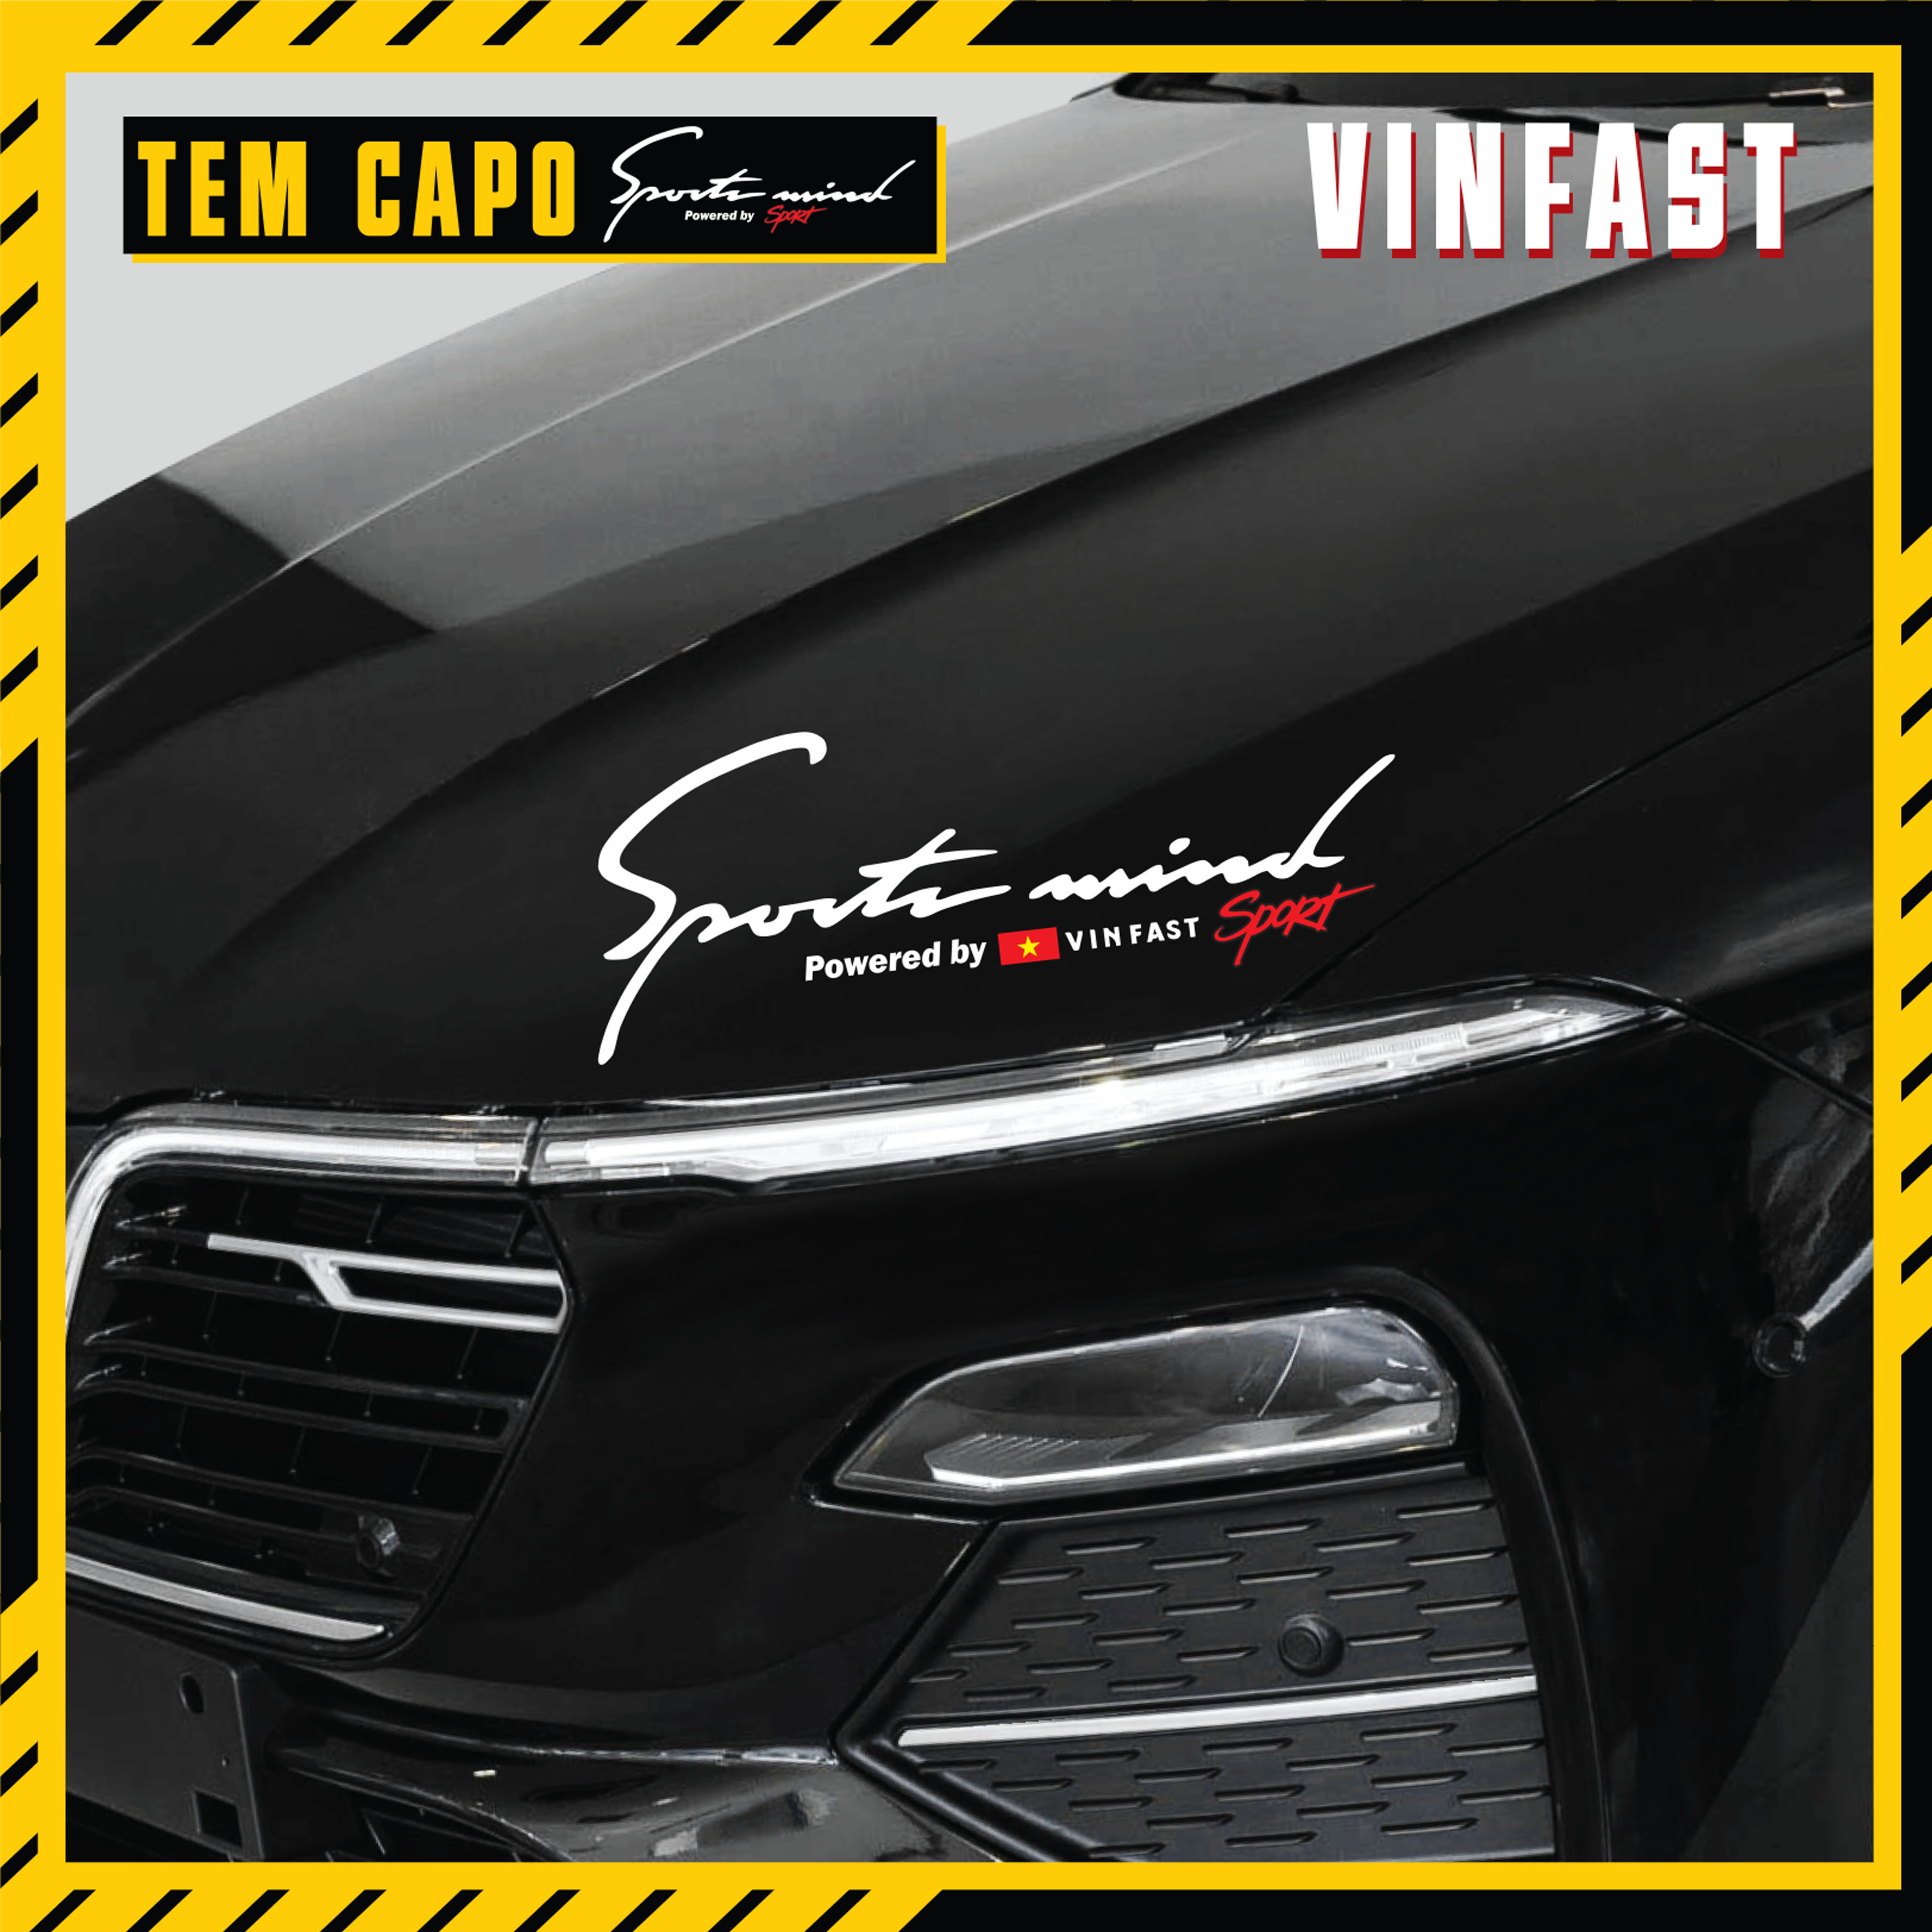 Dán trang trí xe VinFast màu đen mẫu Sport Mind